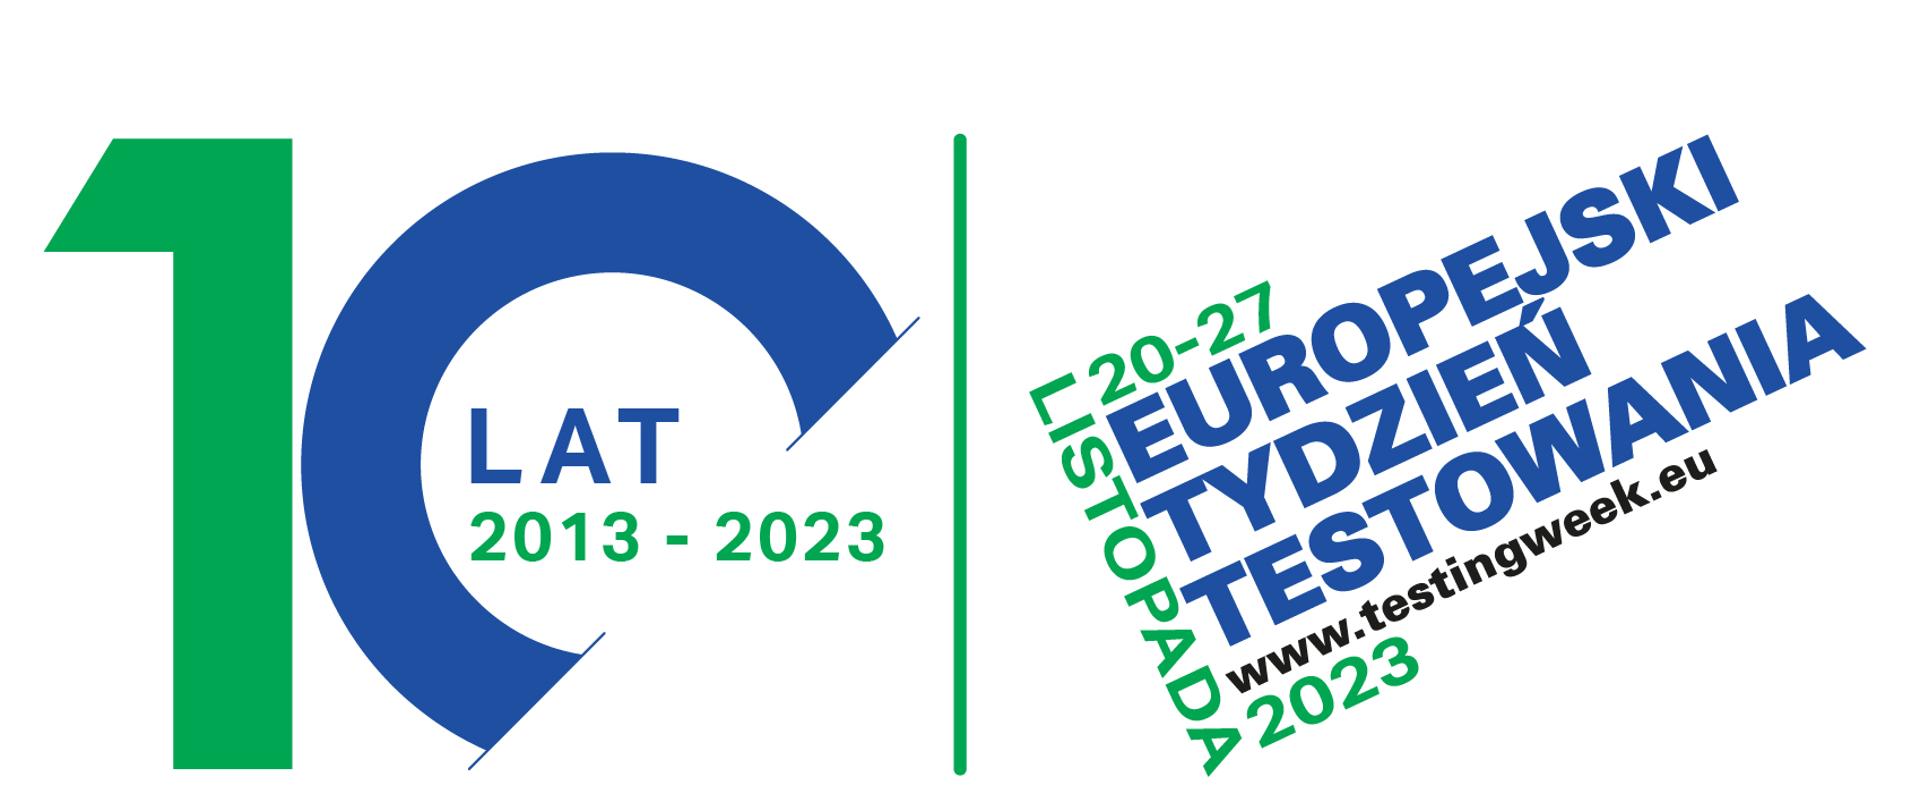 Na białym tle dwa loga w kolorach zielono- niebieskich. Z lewej strony napis "10 lat 2013-2023". Z prawej strony napis "20-27 Listopada 2023 - Europejski Tydzień Testowania www.testingweek.eu"